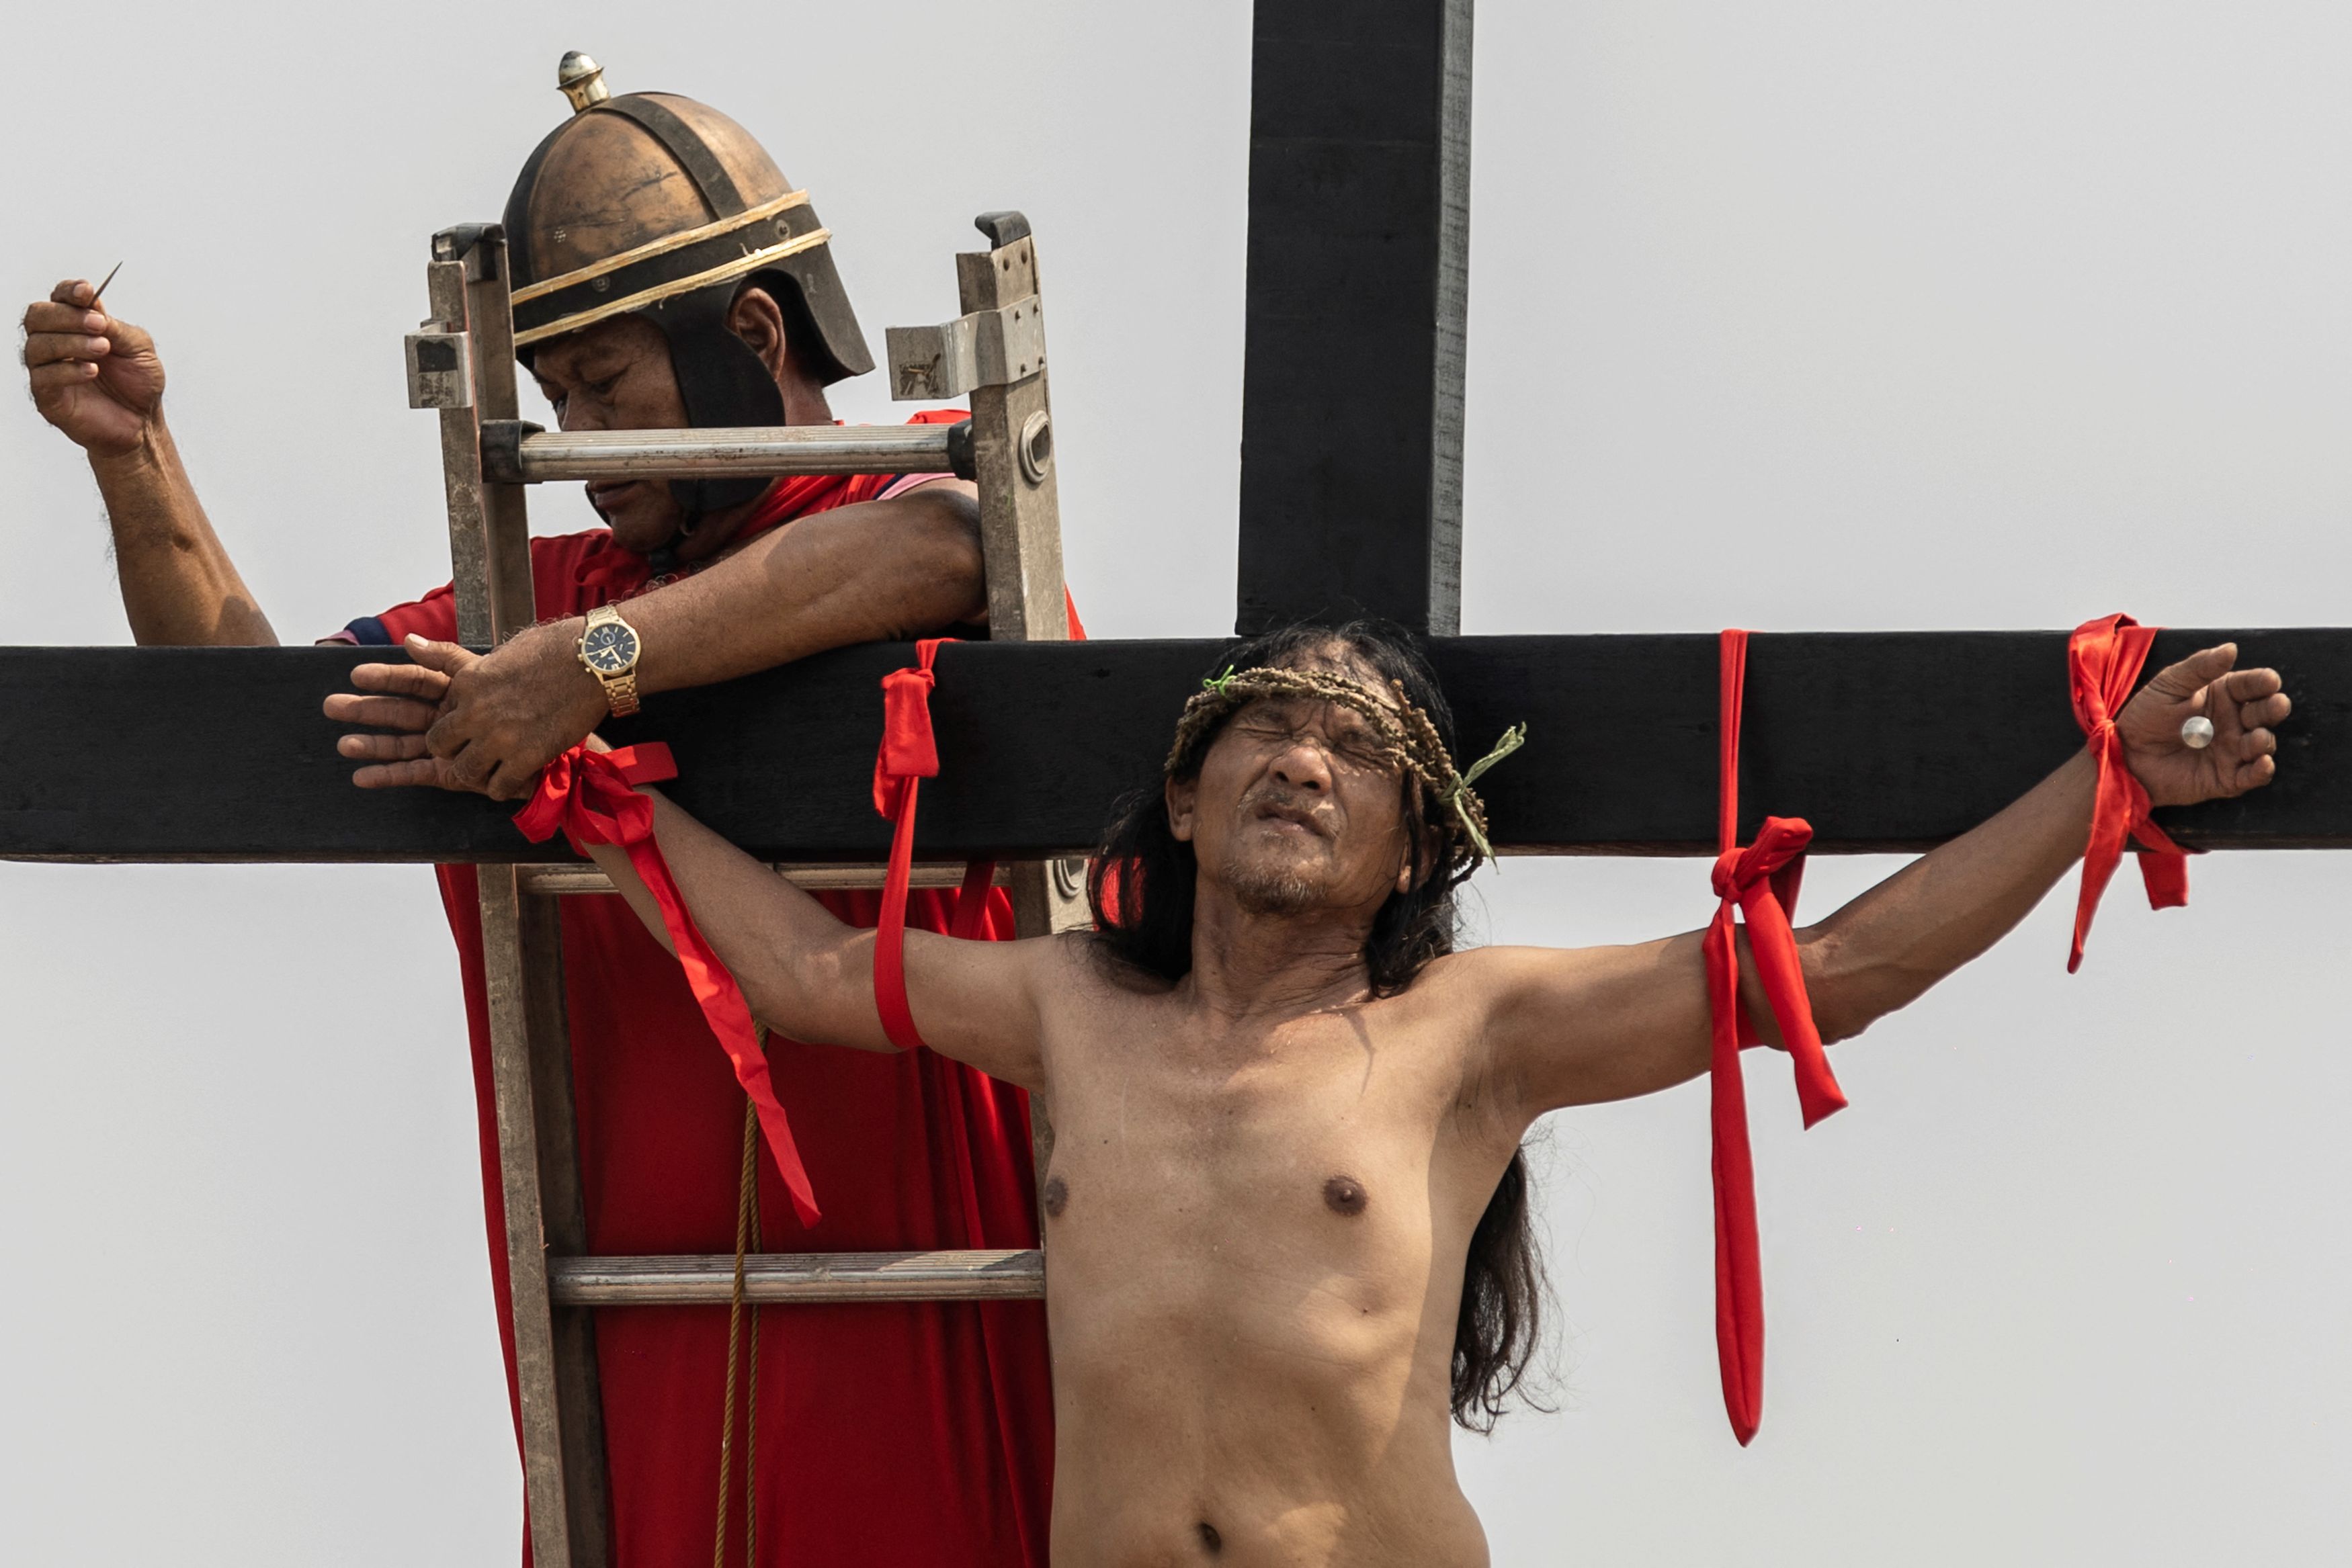 Φιλιππίνες: Αναπαράσταση της Σταύρωσης - Συγκλονιστικές εικόνες από το αιματηρό έθιμο